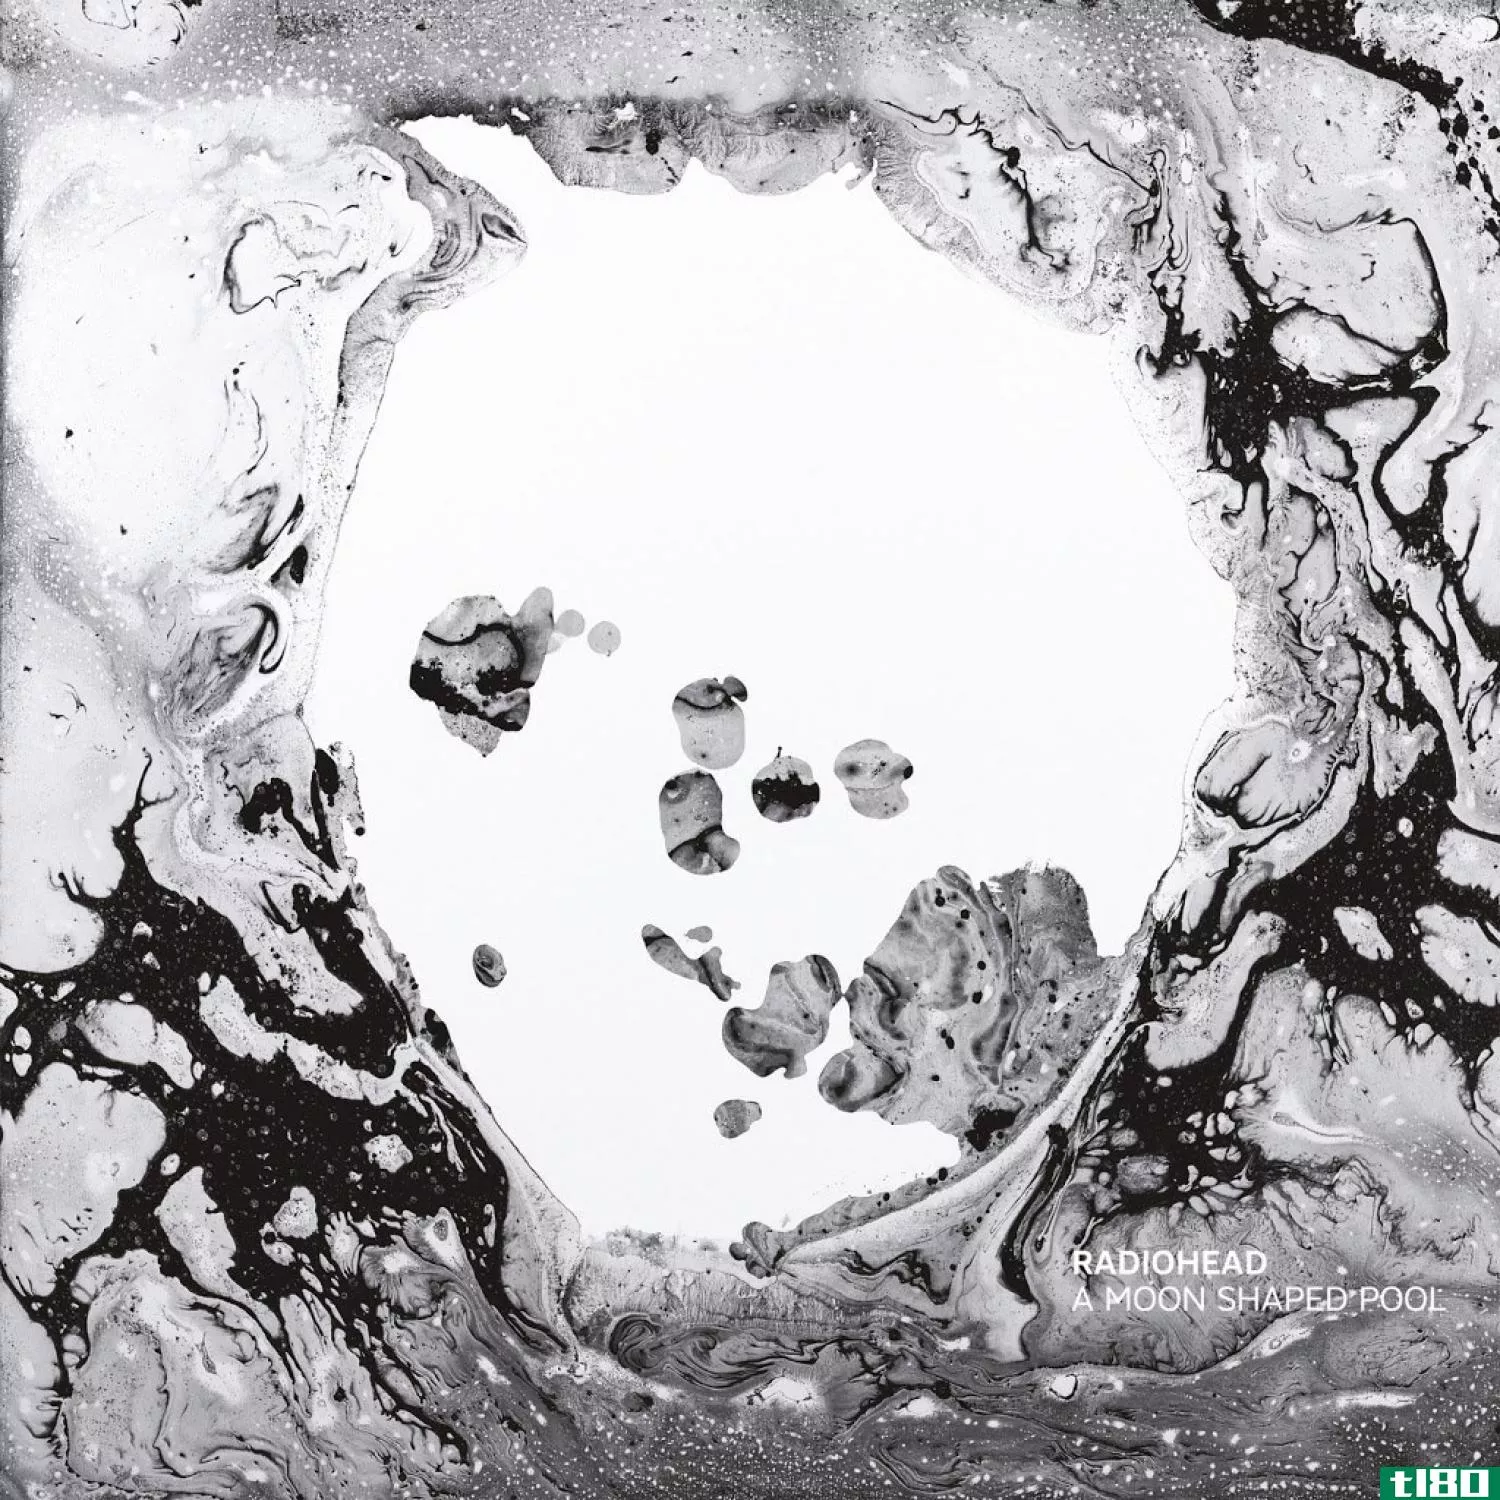 radiohead的新专辑《月亮形状的水池》将焦虑转化为慷慨